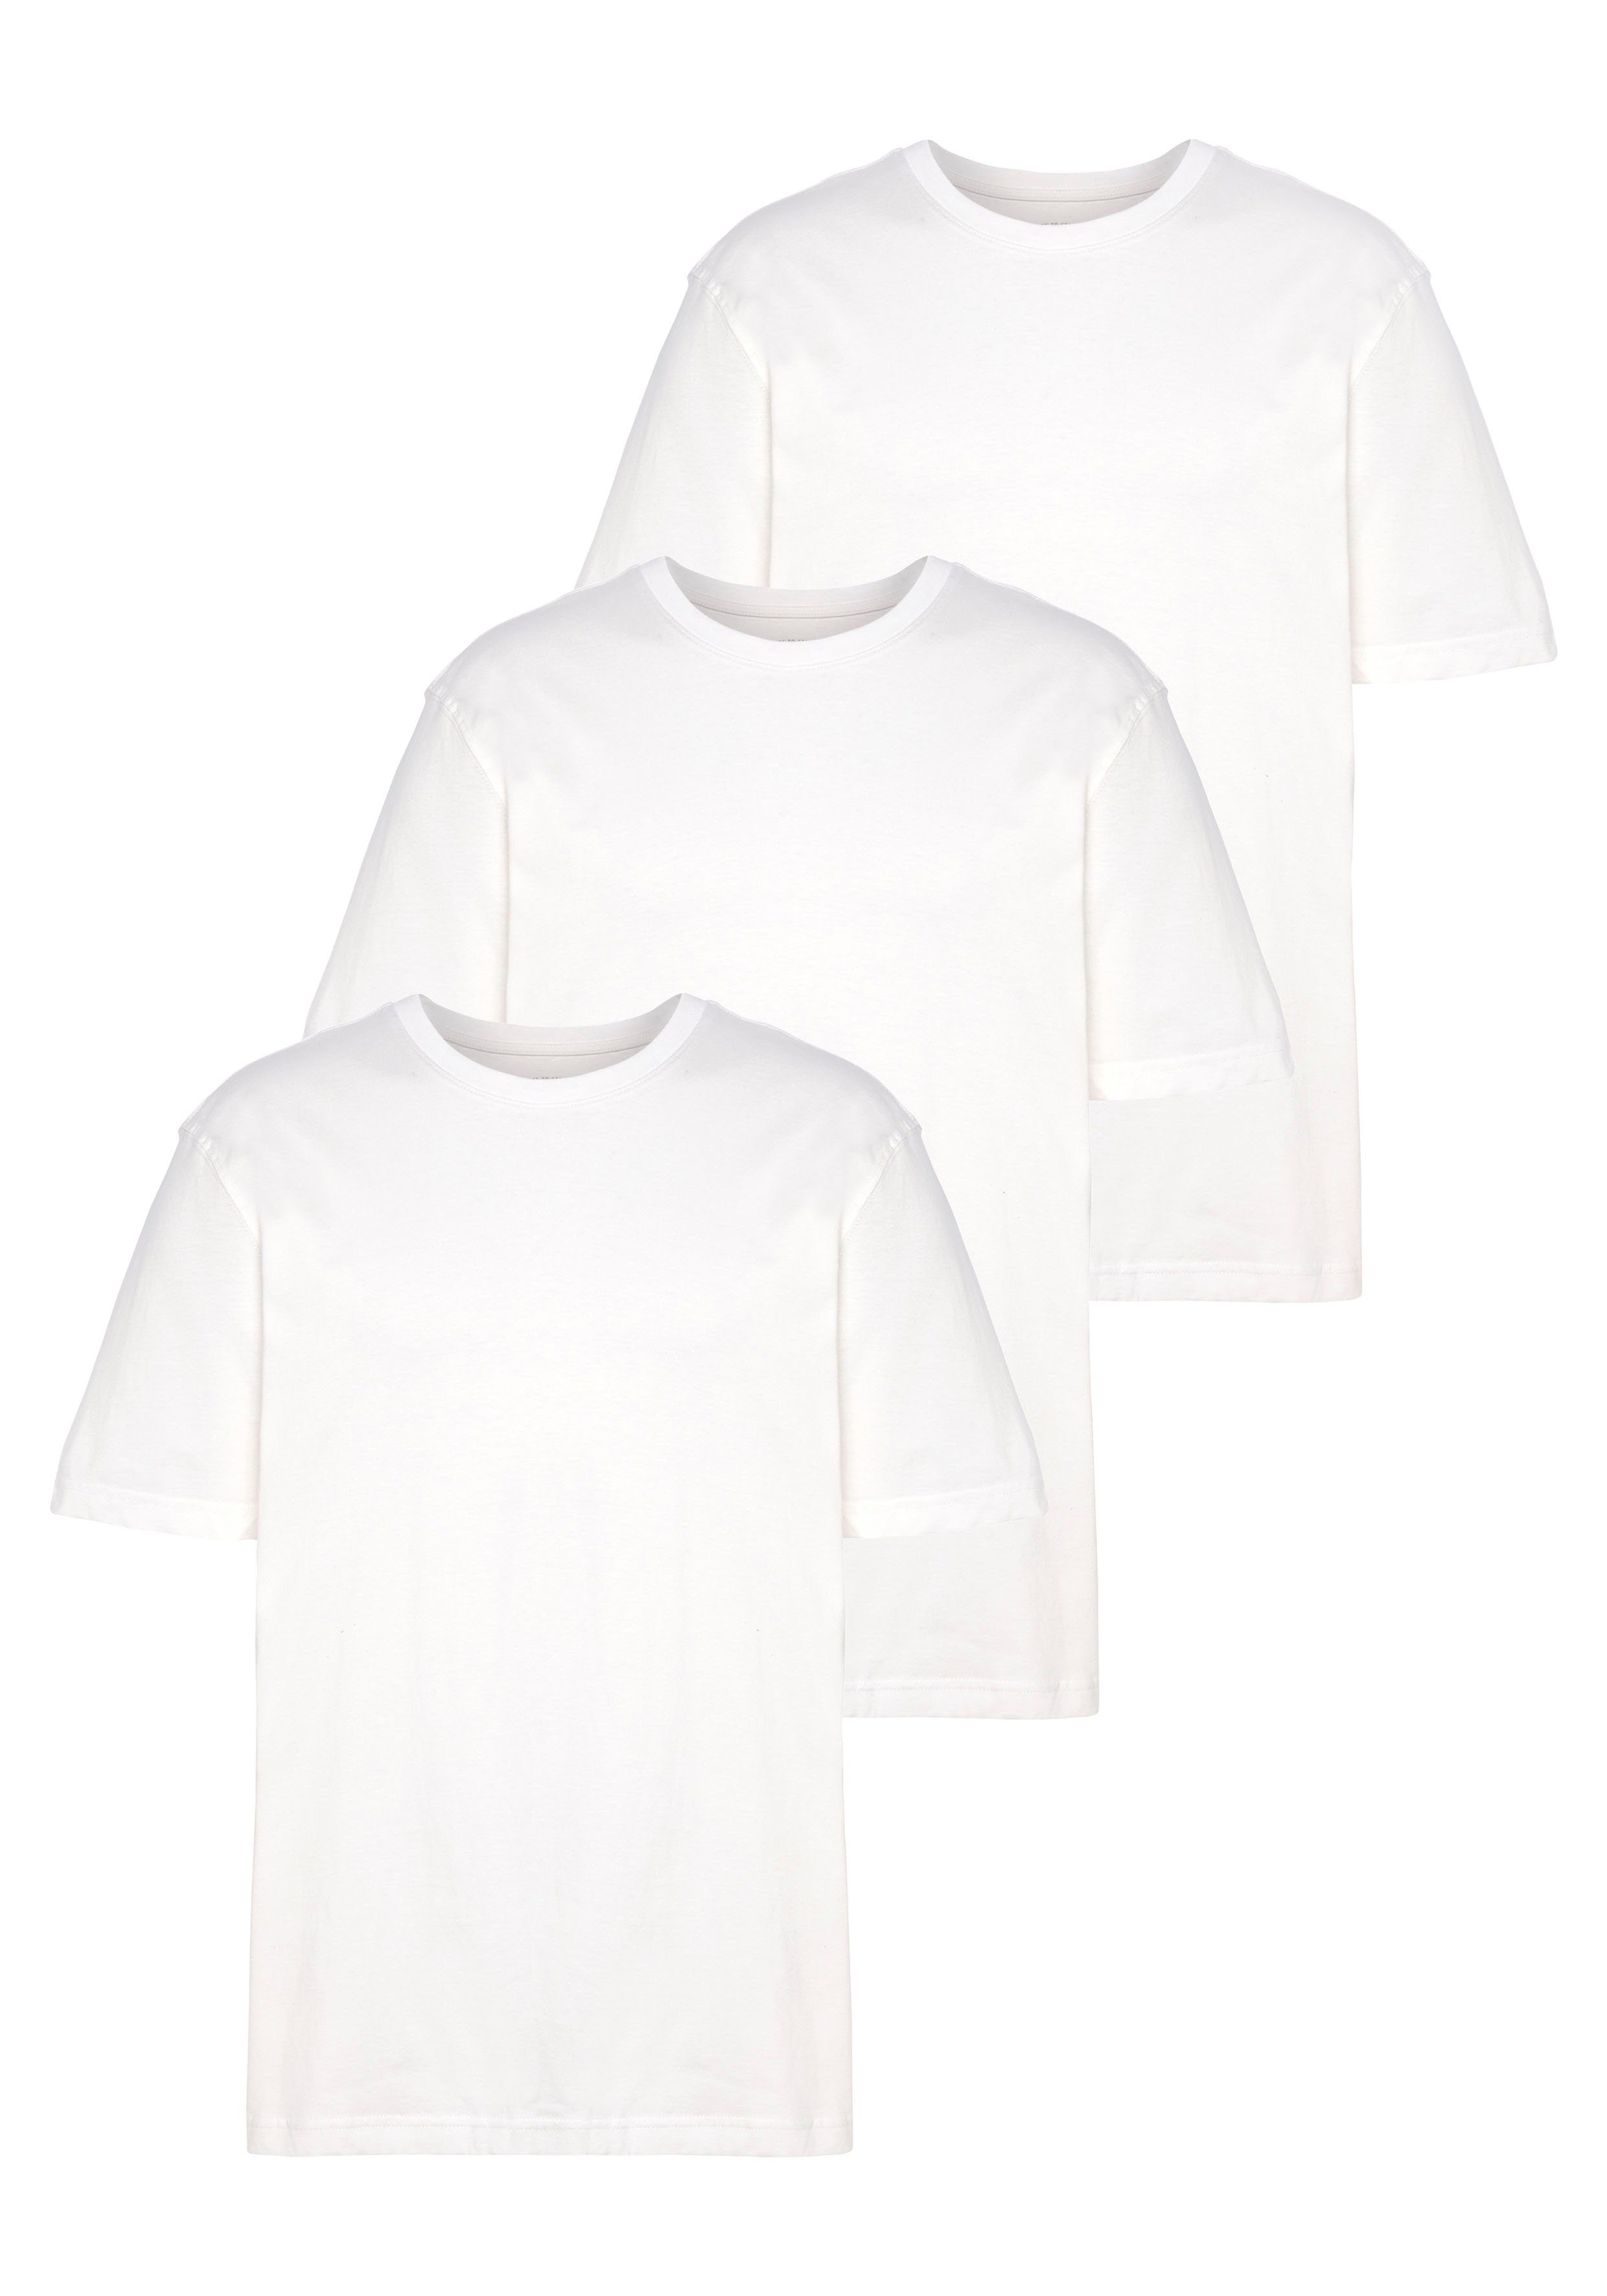 Unterzieh- Man's T-Shirt als T-shirt weiß World perfekt (Packung, 3er-Pack) 3-tlg.,